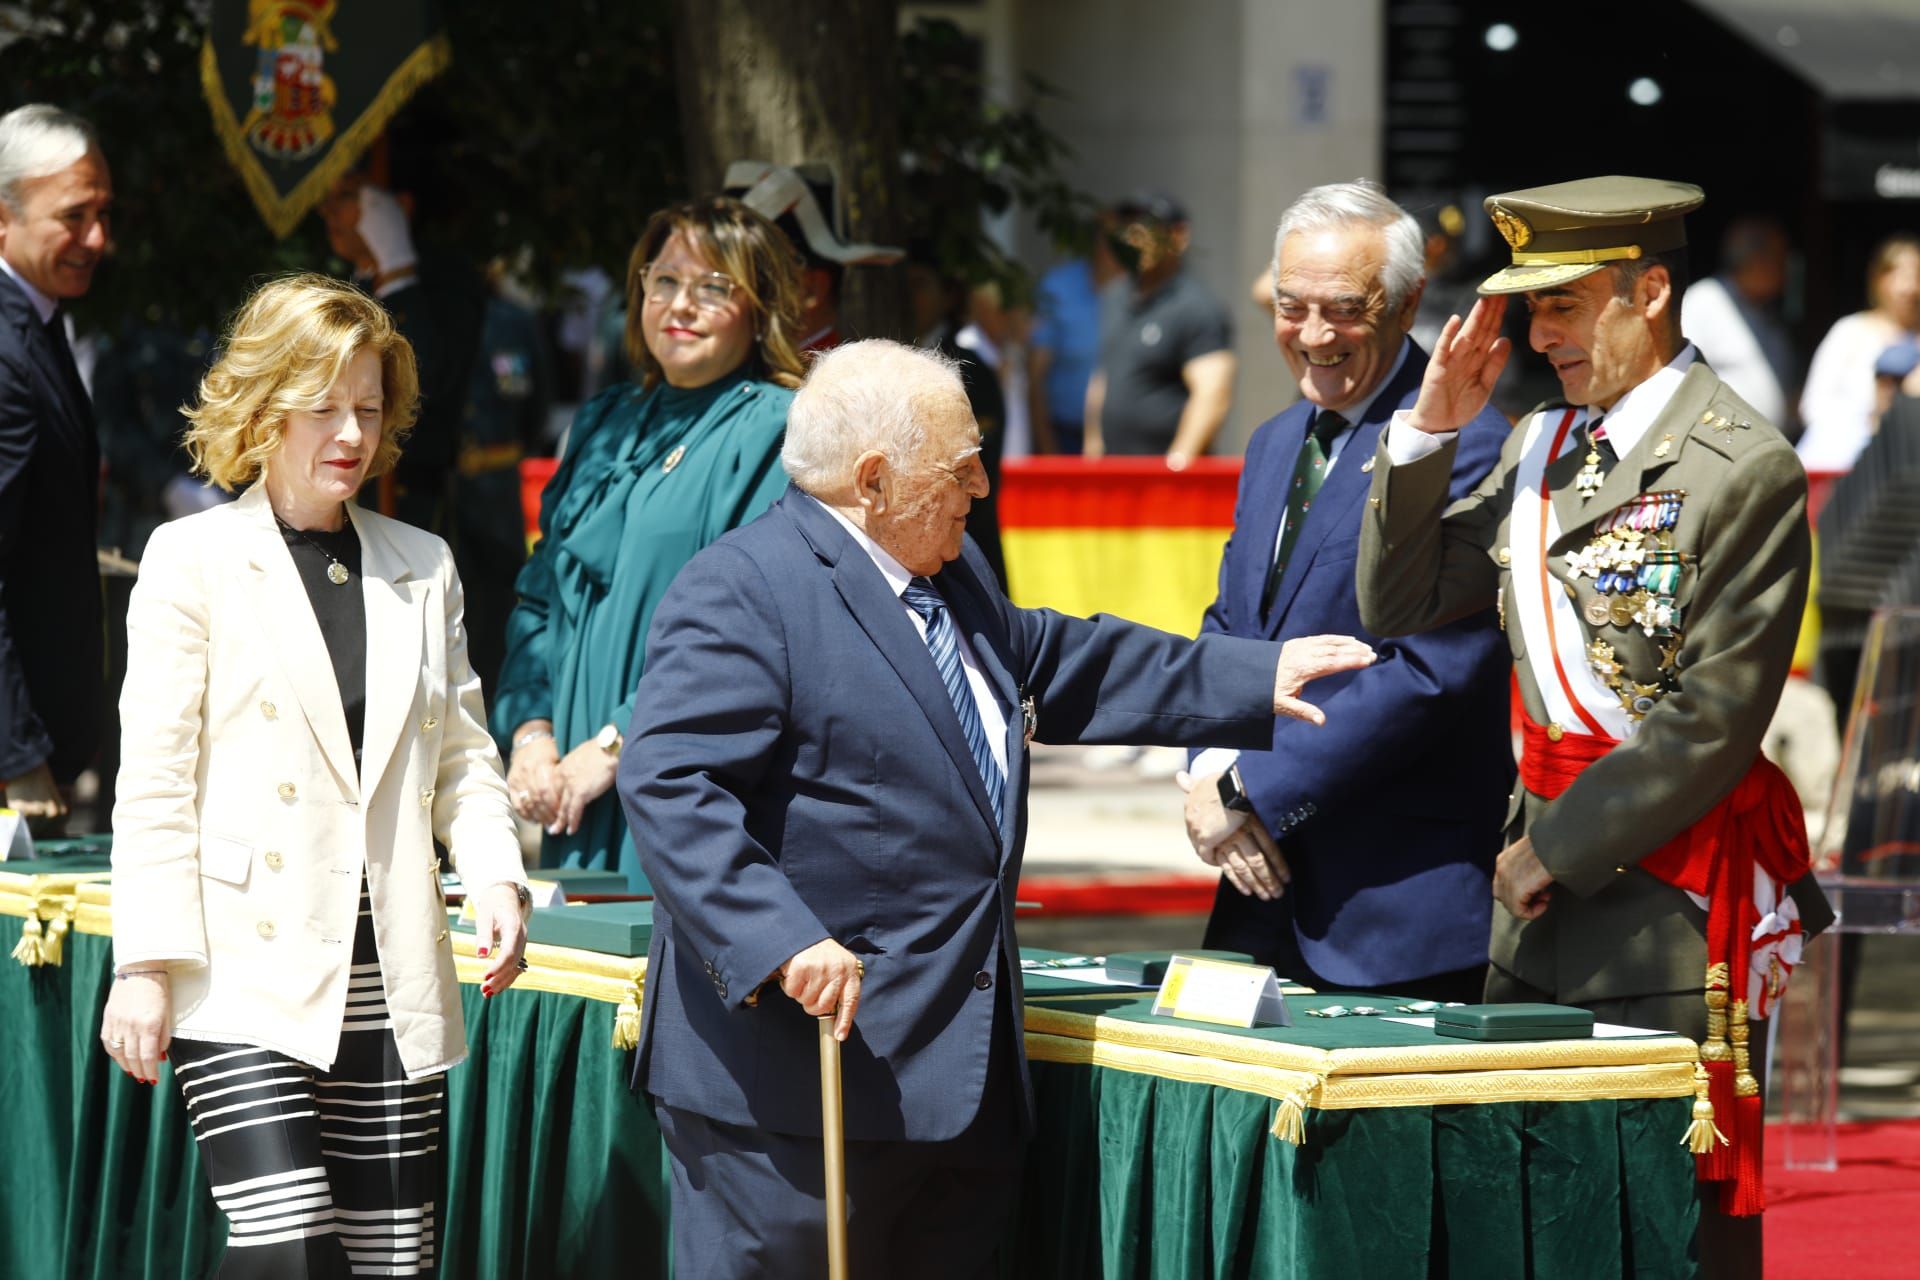 La Guardia Civil celebra su 179º aniversario en Zaragoza